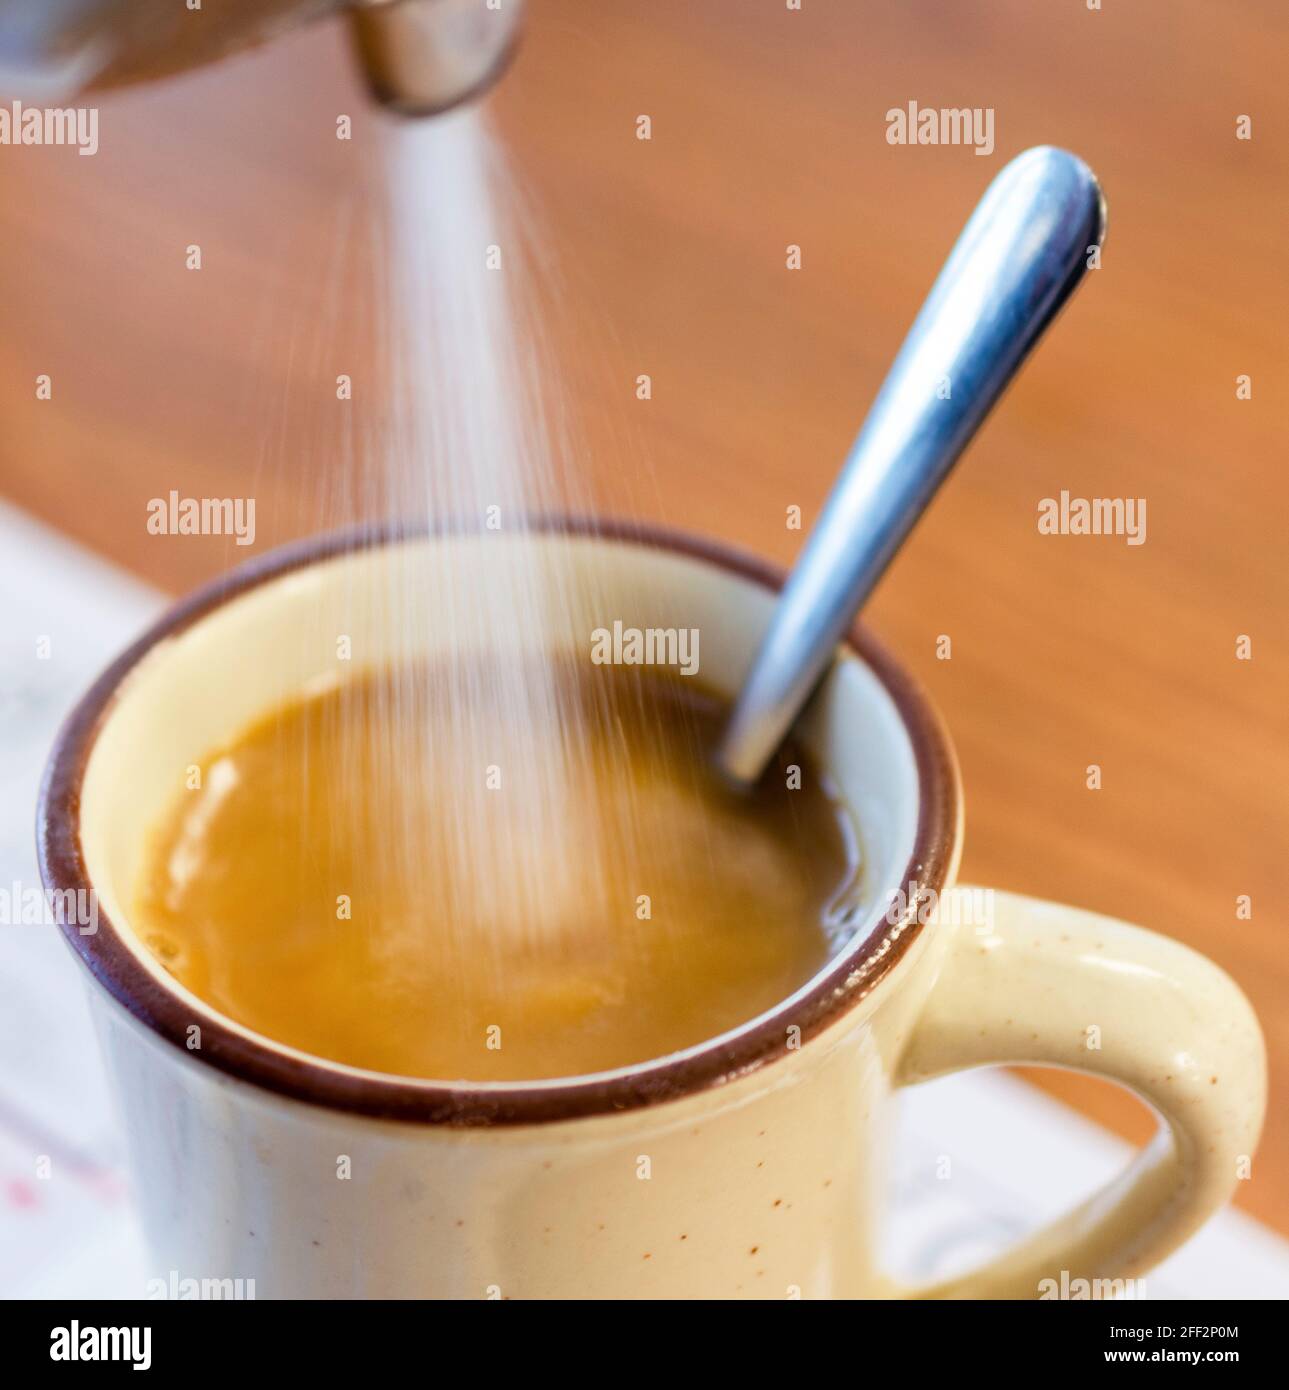 Zucker wird morgens aus einem Zuckerspender in eine heiße Tasse Kaffee in  einem Diner gegossen. Der Griff des Löffels ragt aus dem Becher  Stockfotografie - Alamy